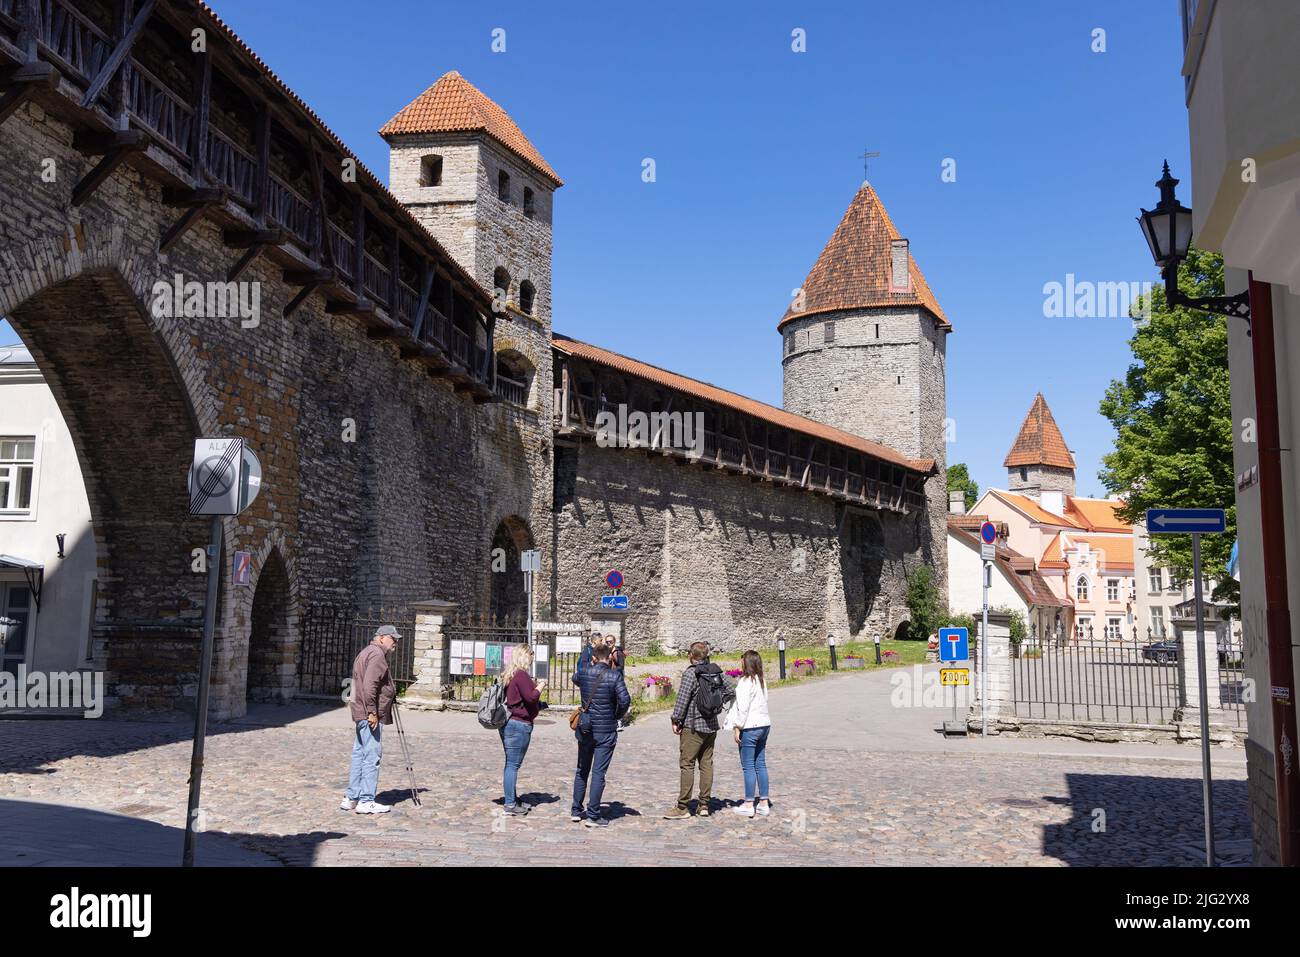 Menschen an der Stadtmauer von Tallinn, einem Teil der mittelalterlichen Befestigungsanlagen aus dem 14.. Jahrhundert, darunter der Nonnen-Turm, die Altstadt von Tallinn, Tallinn Estland Stockfoto